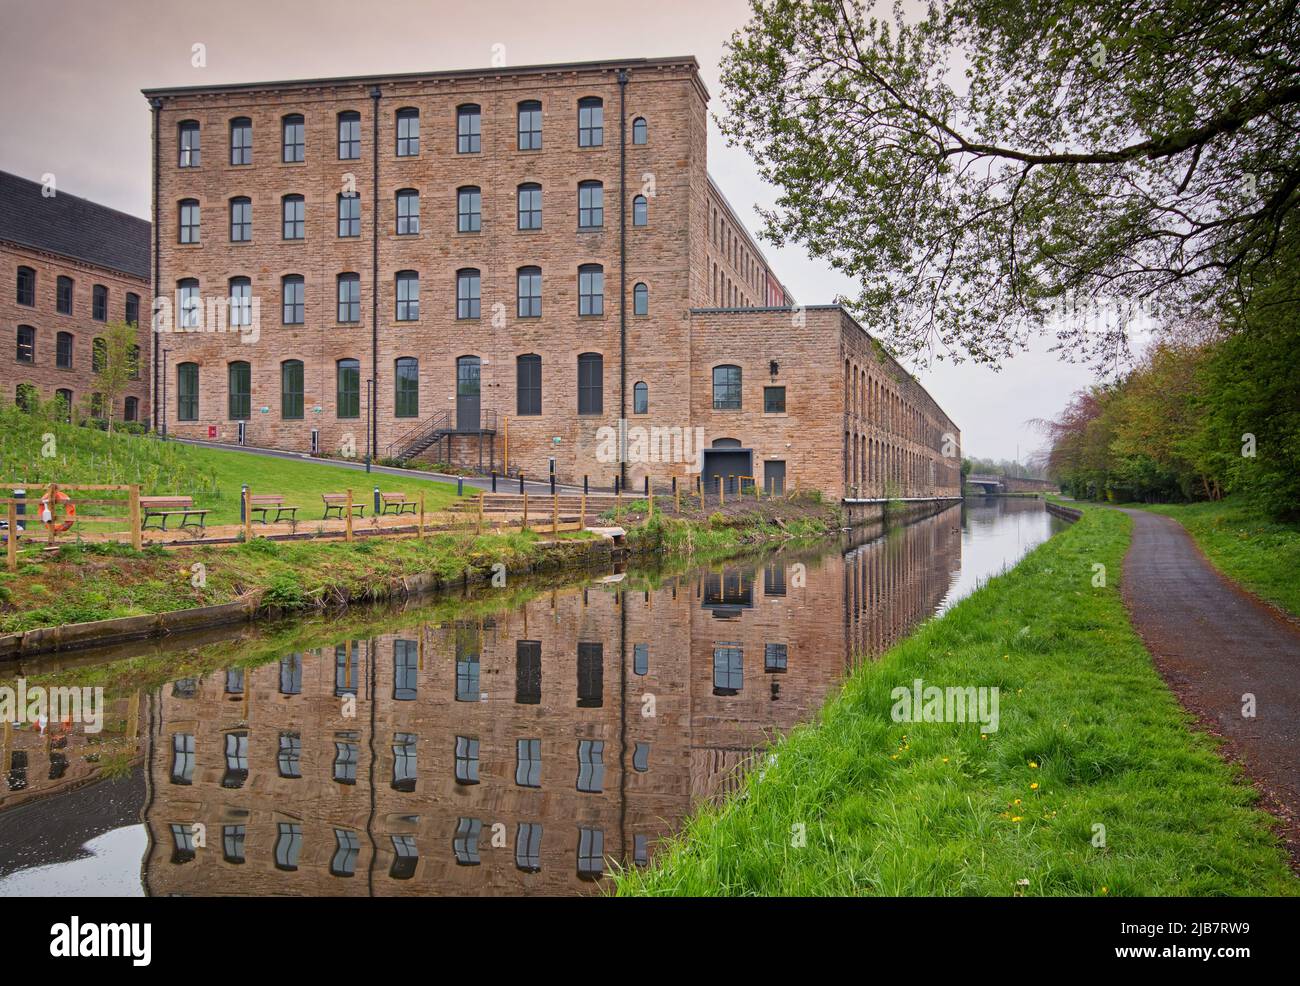 Tunstill Mill, en el centro del proyecto de renovación Northlight, junto al canal de Leeds y Liverpool Foto de stock